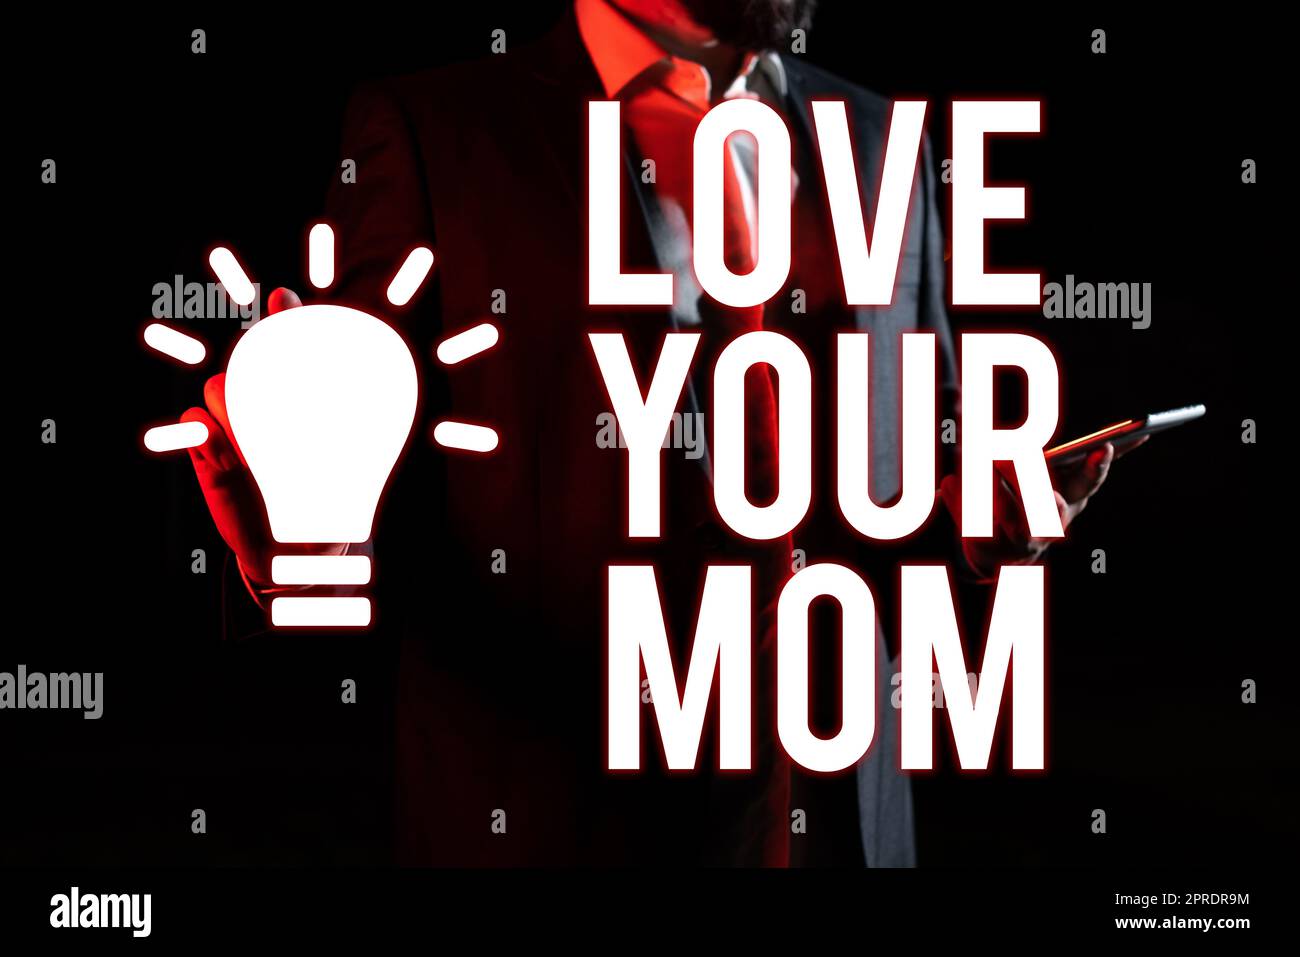 Affiche textuelle montrant Love Your Mum. Aperçu d'affaires ont de bons sentiments au sujet de votre mère aimer émotions Homme tenant la tablette et pointant avec un doigt sur le message important Banque D'Images